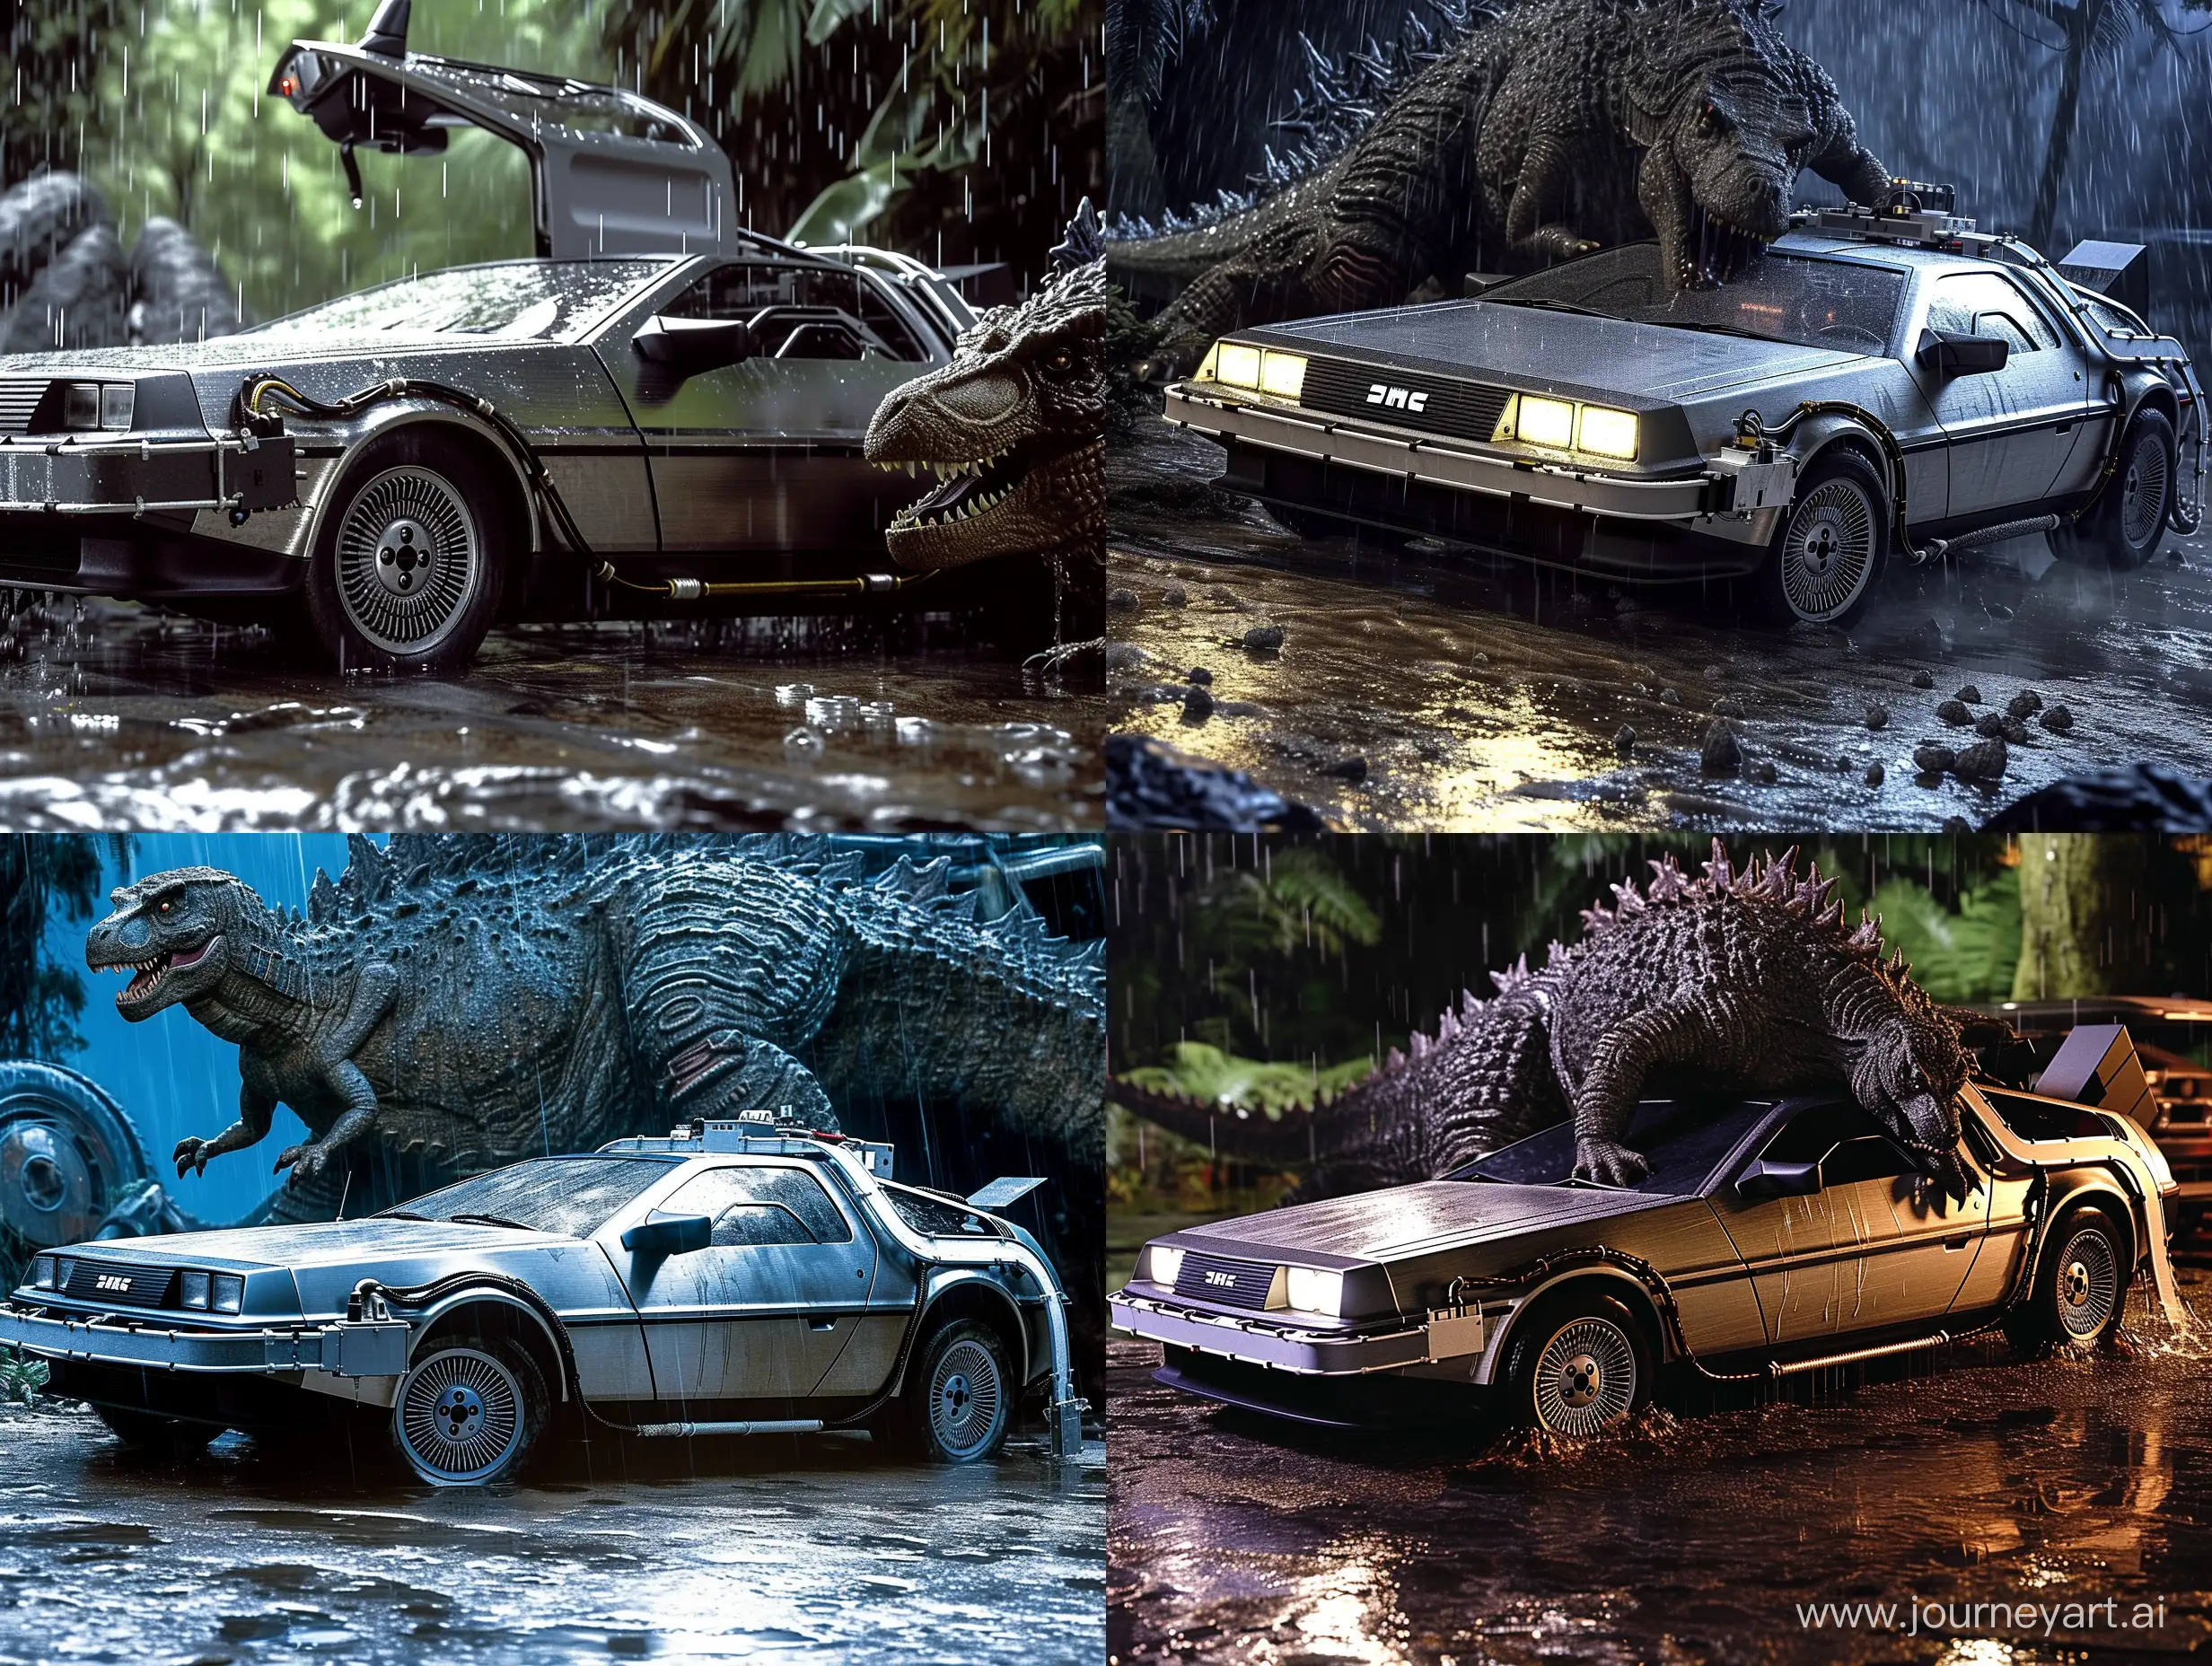 Godzilla-1998-Confronts-DeLorean-Time-Machine-in-Rainy-Movie-Scene